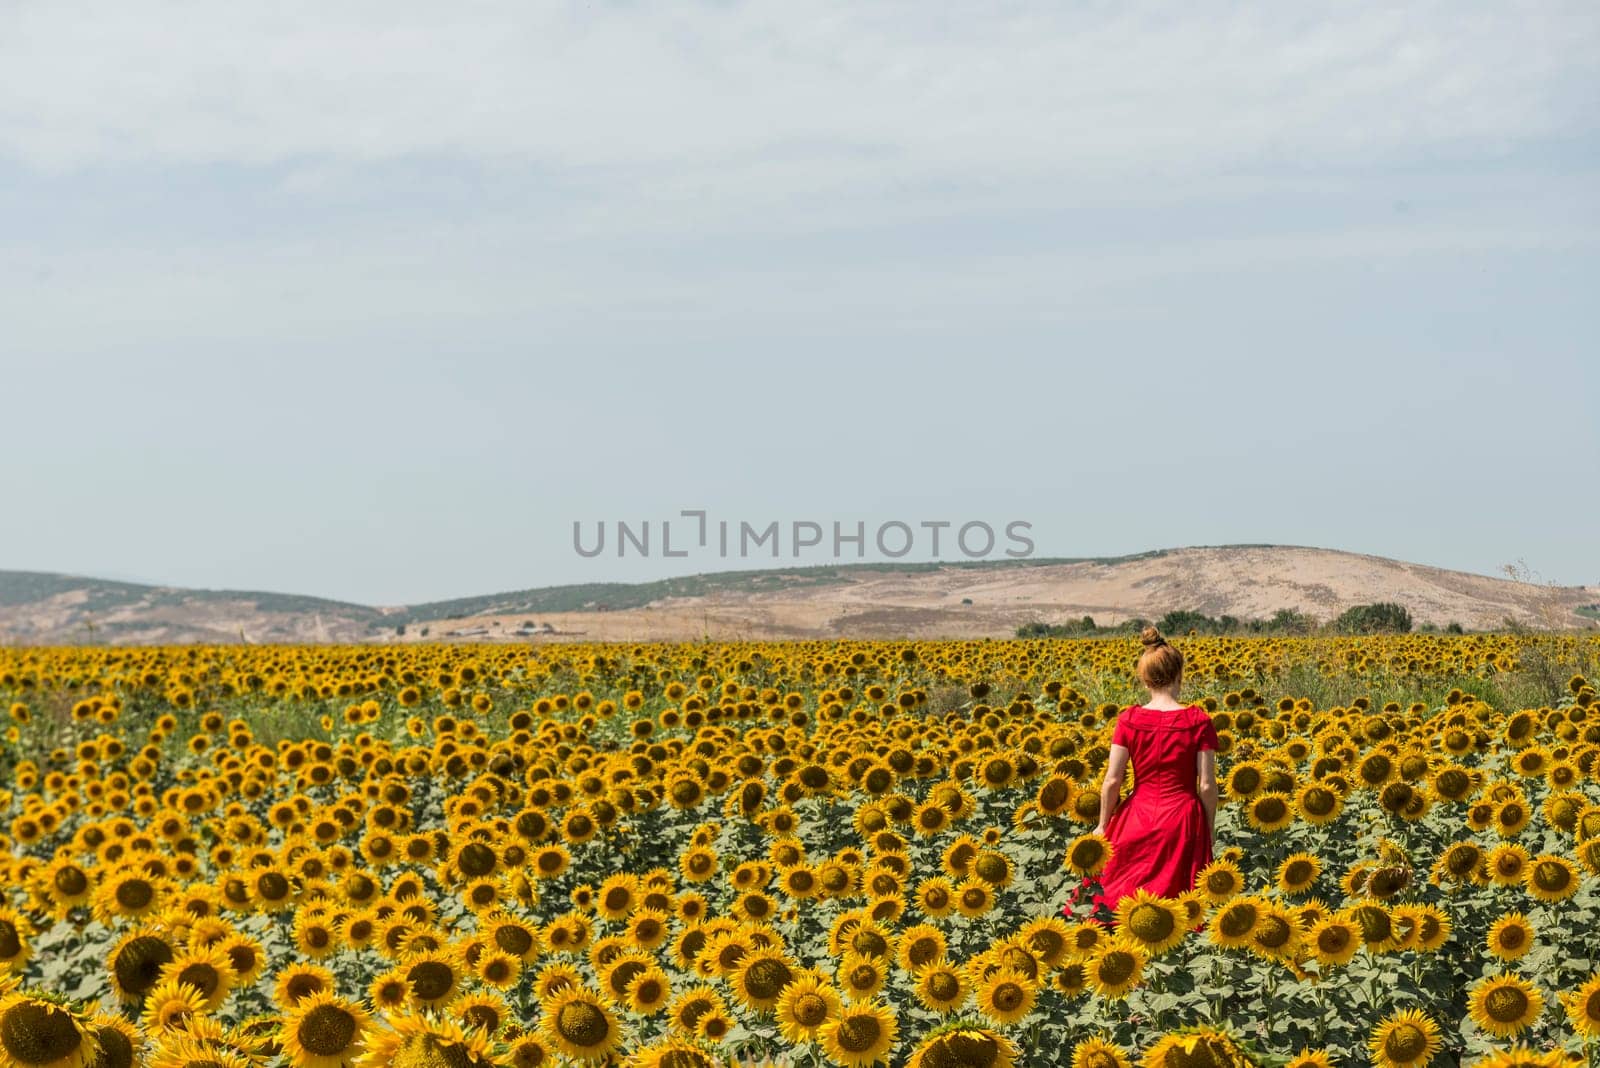 Sunflower field by emirkoo